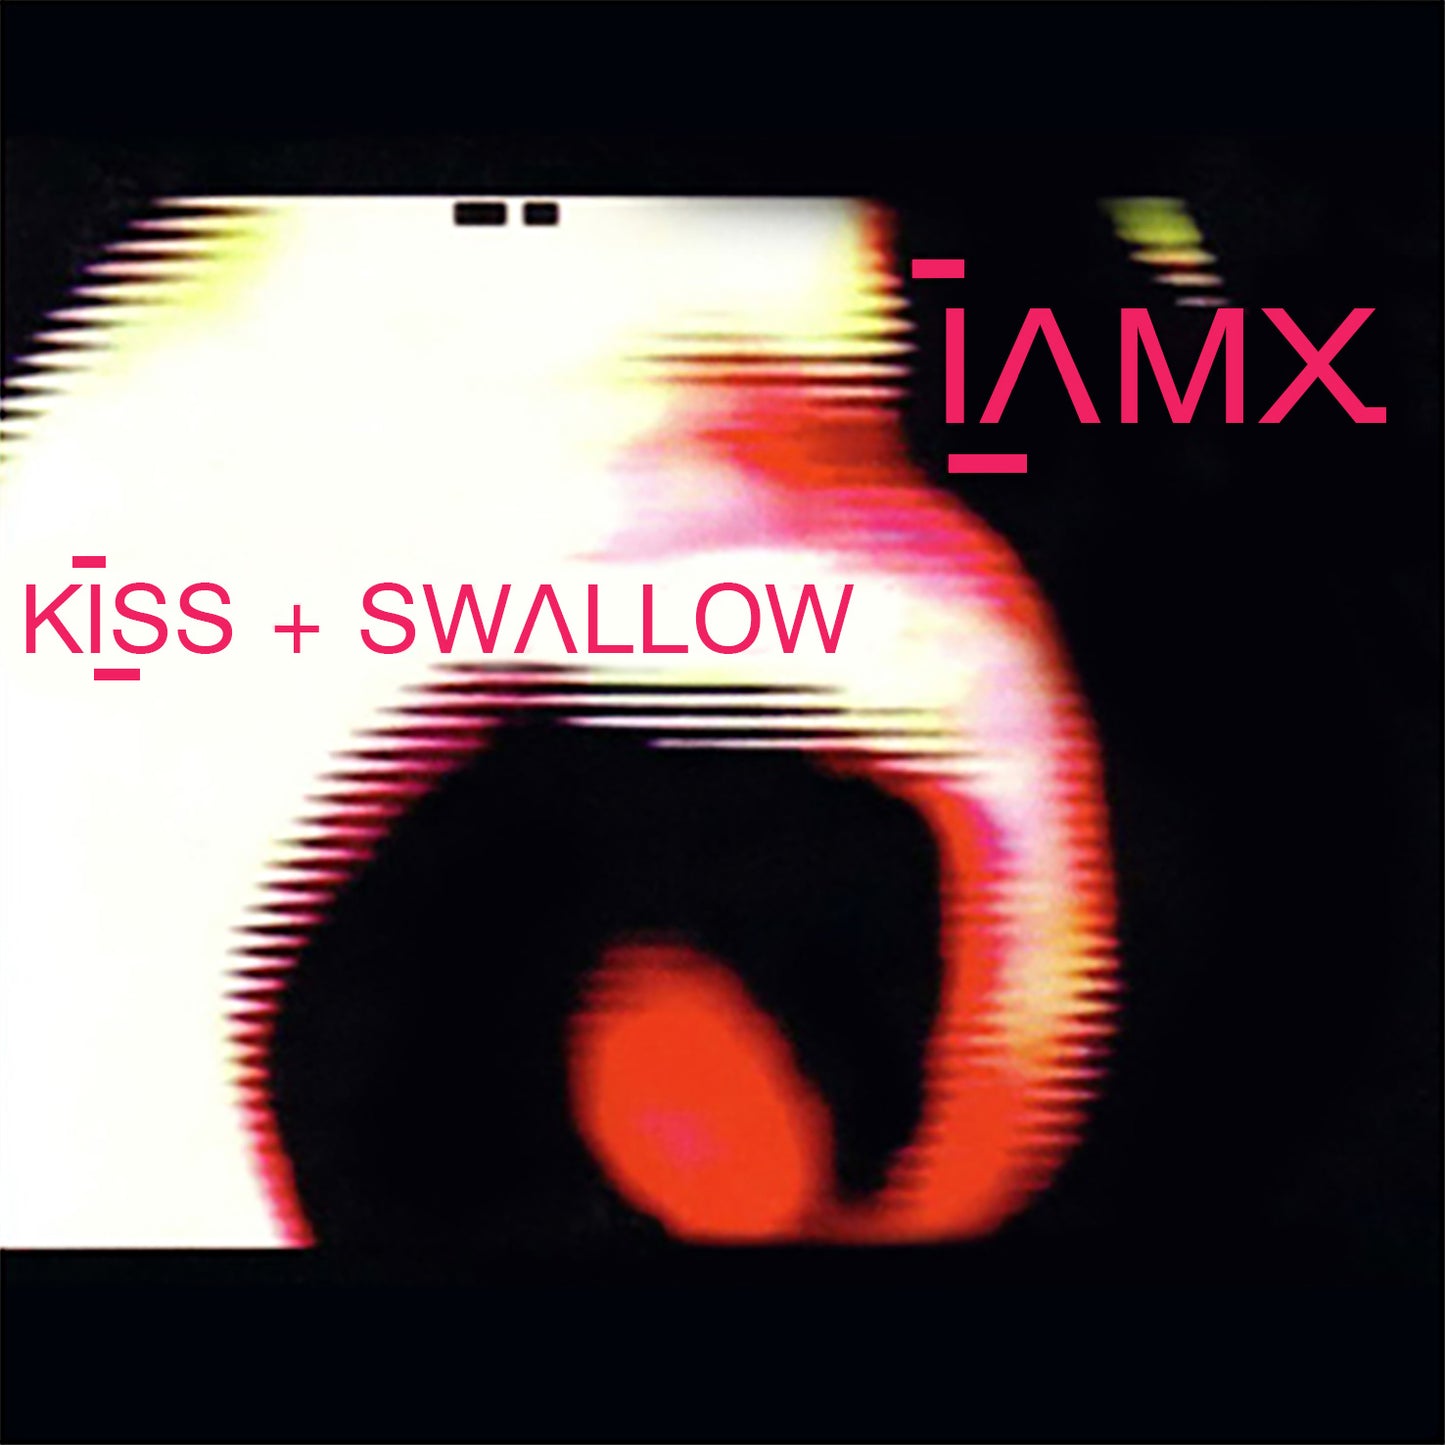 Double Vinyl - Kiss + Swallow